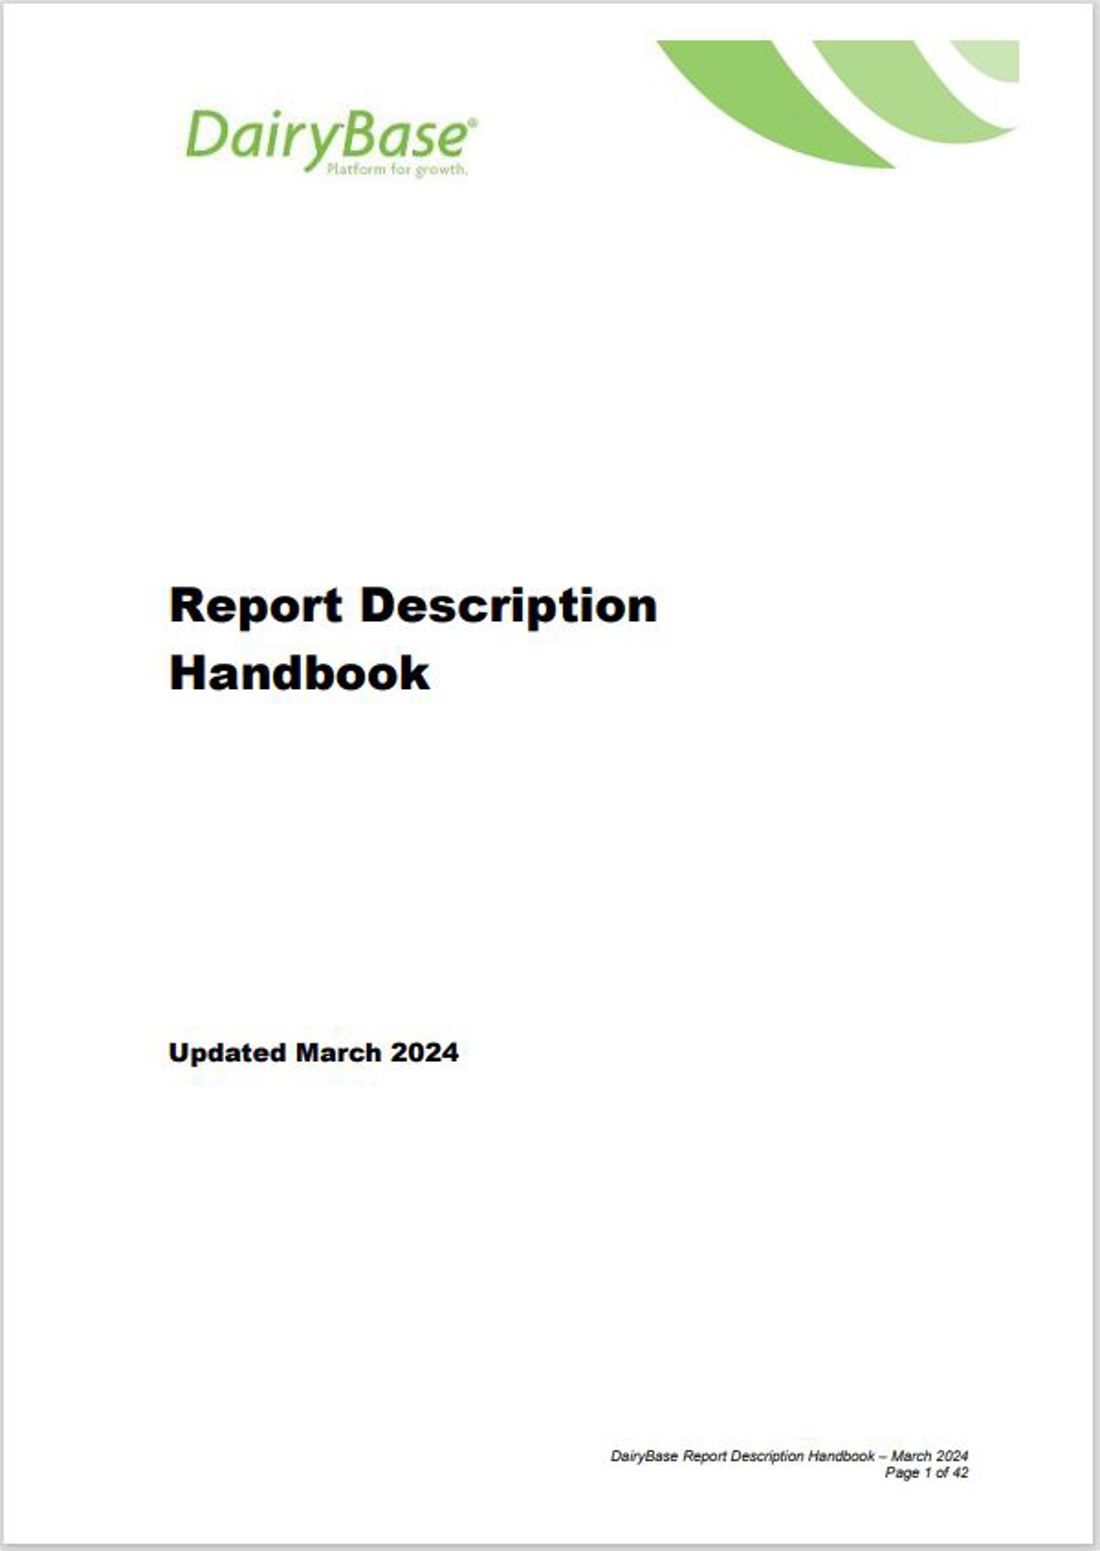 Dairybase Report Description Handbook Image